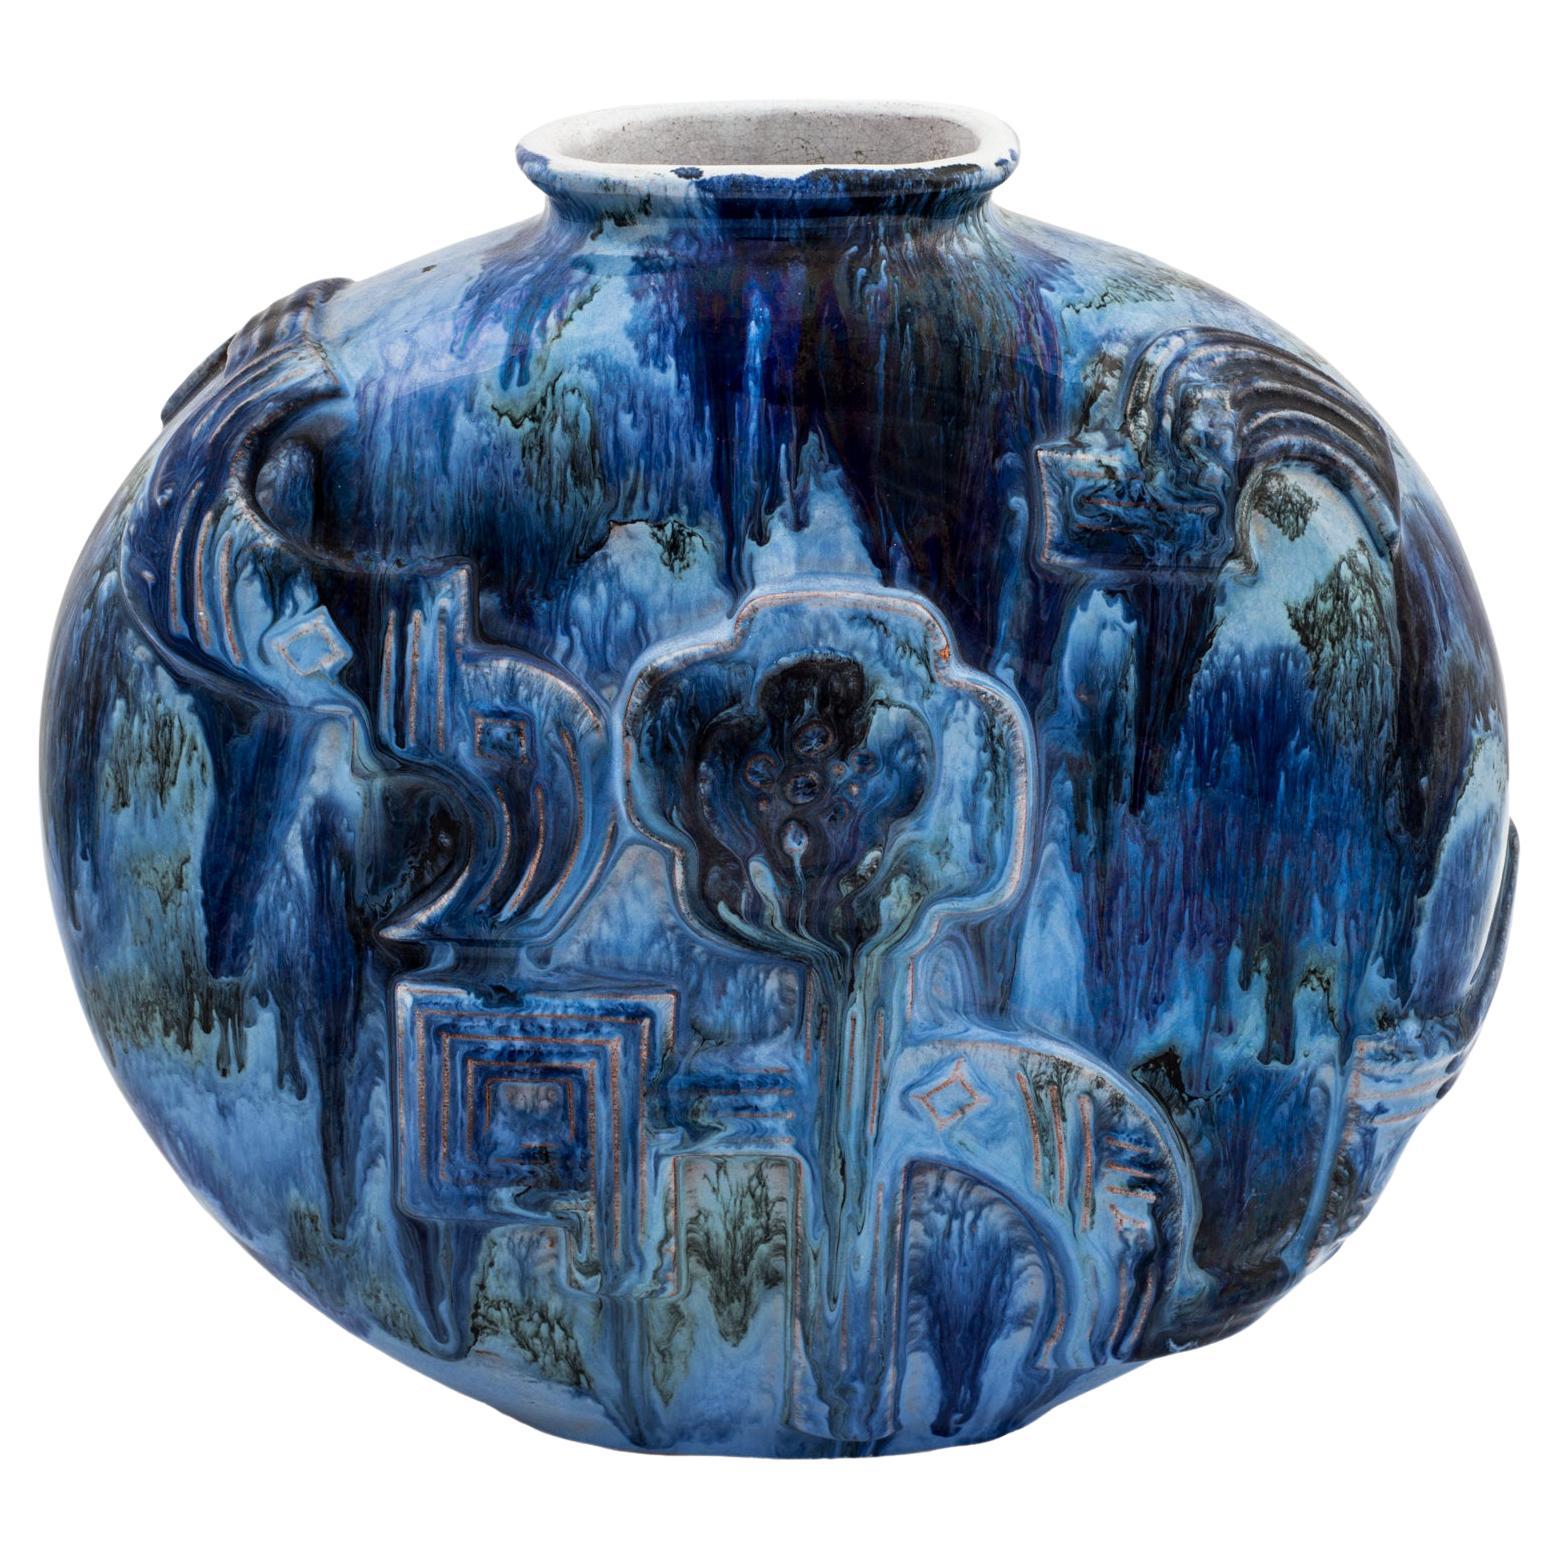 Ceramic Vase Maria Likarz Wiener Werkstatte circa 1925 Austrian Art Deco Blue